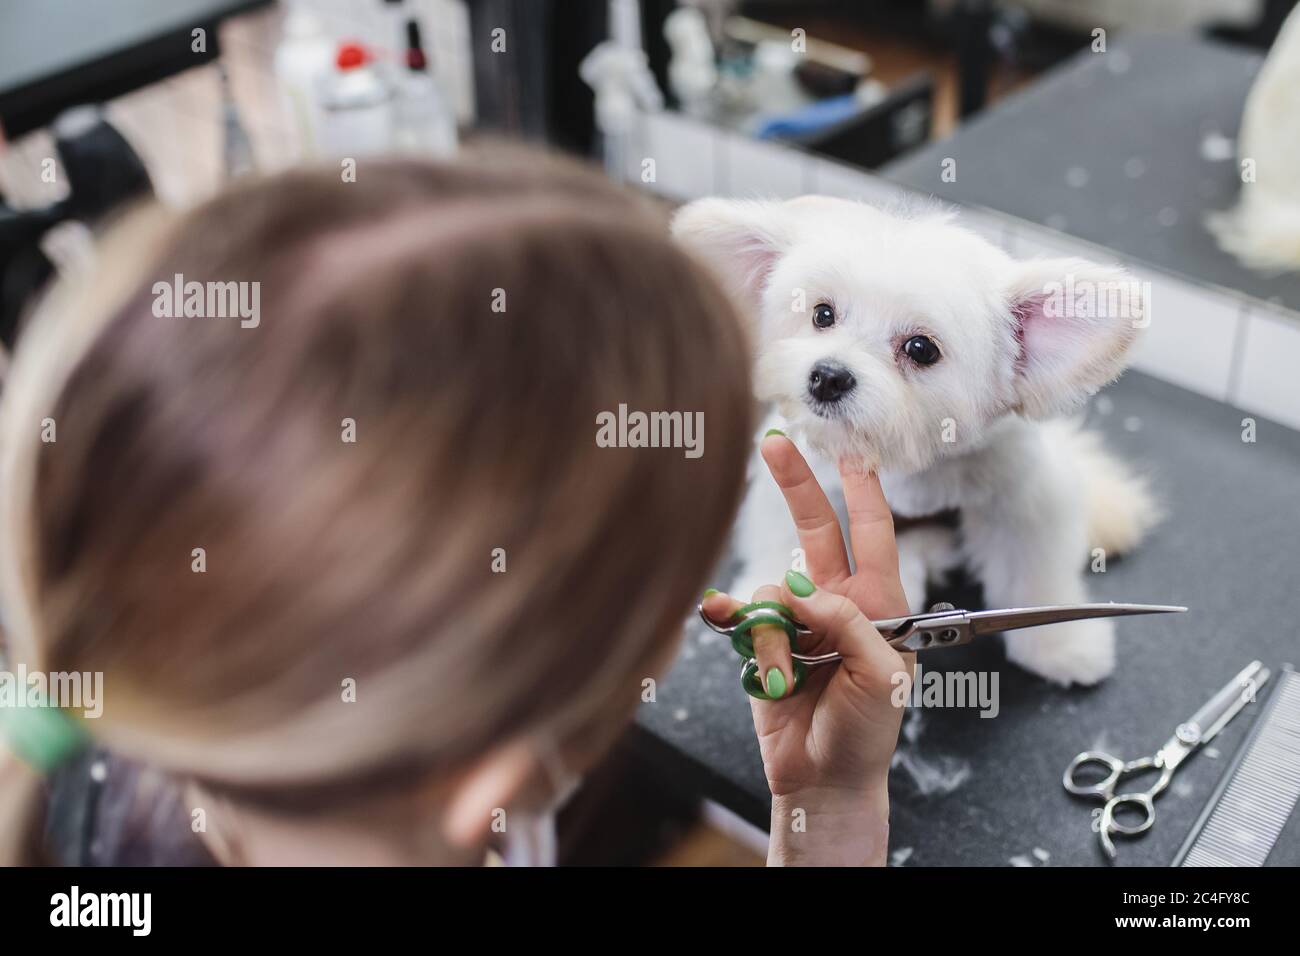 Haarschnitt eines weißen kleinen Hundes. Schöner und lustiger Hund. Malteser  Hund Stockfotografie - Alamy